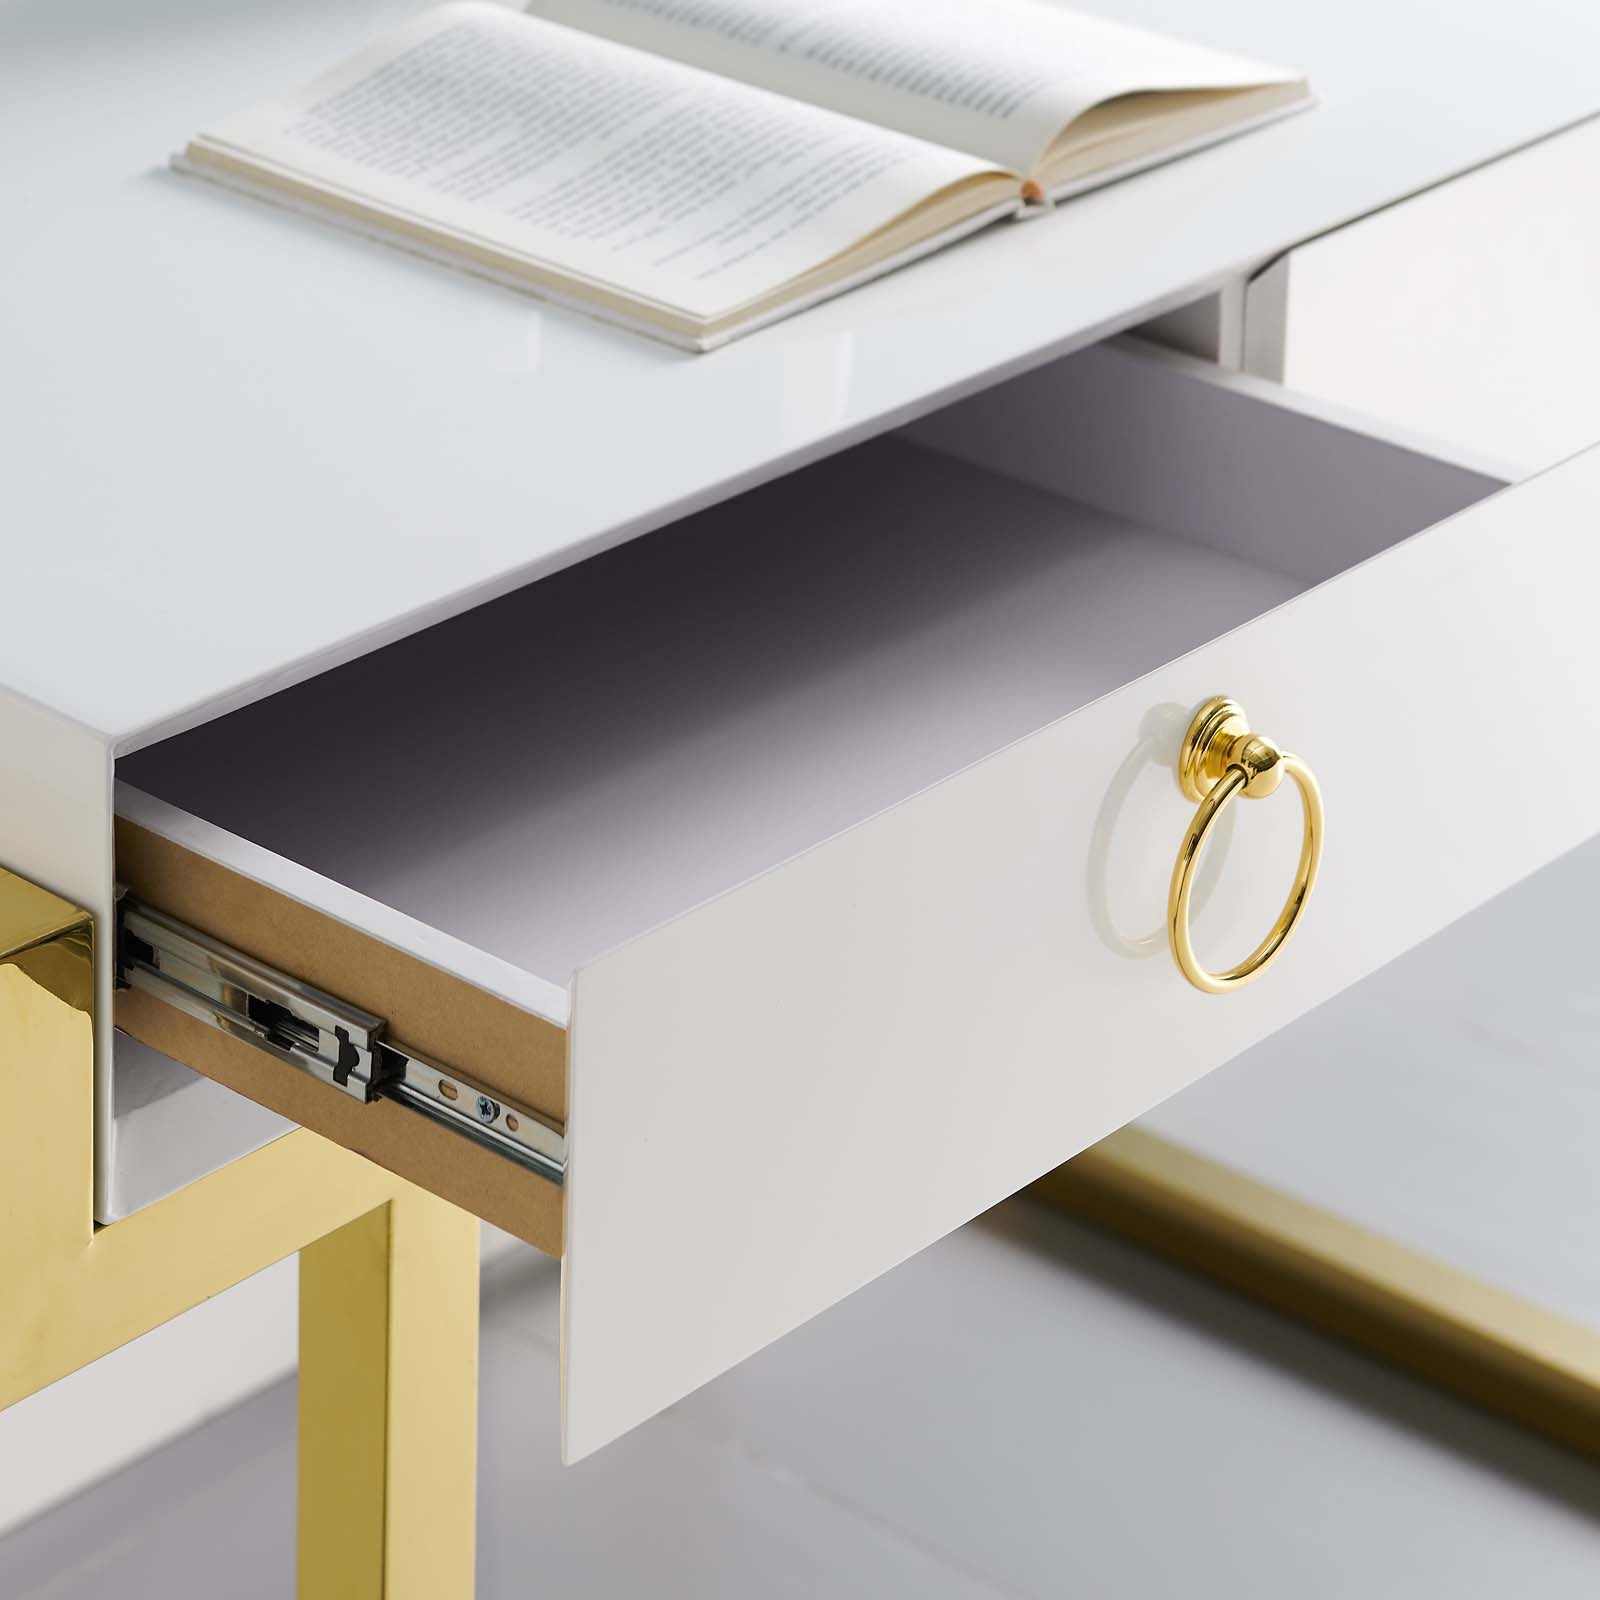 Modway Desks - Ring Office Desk Gold & White